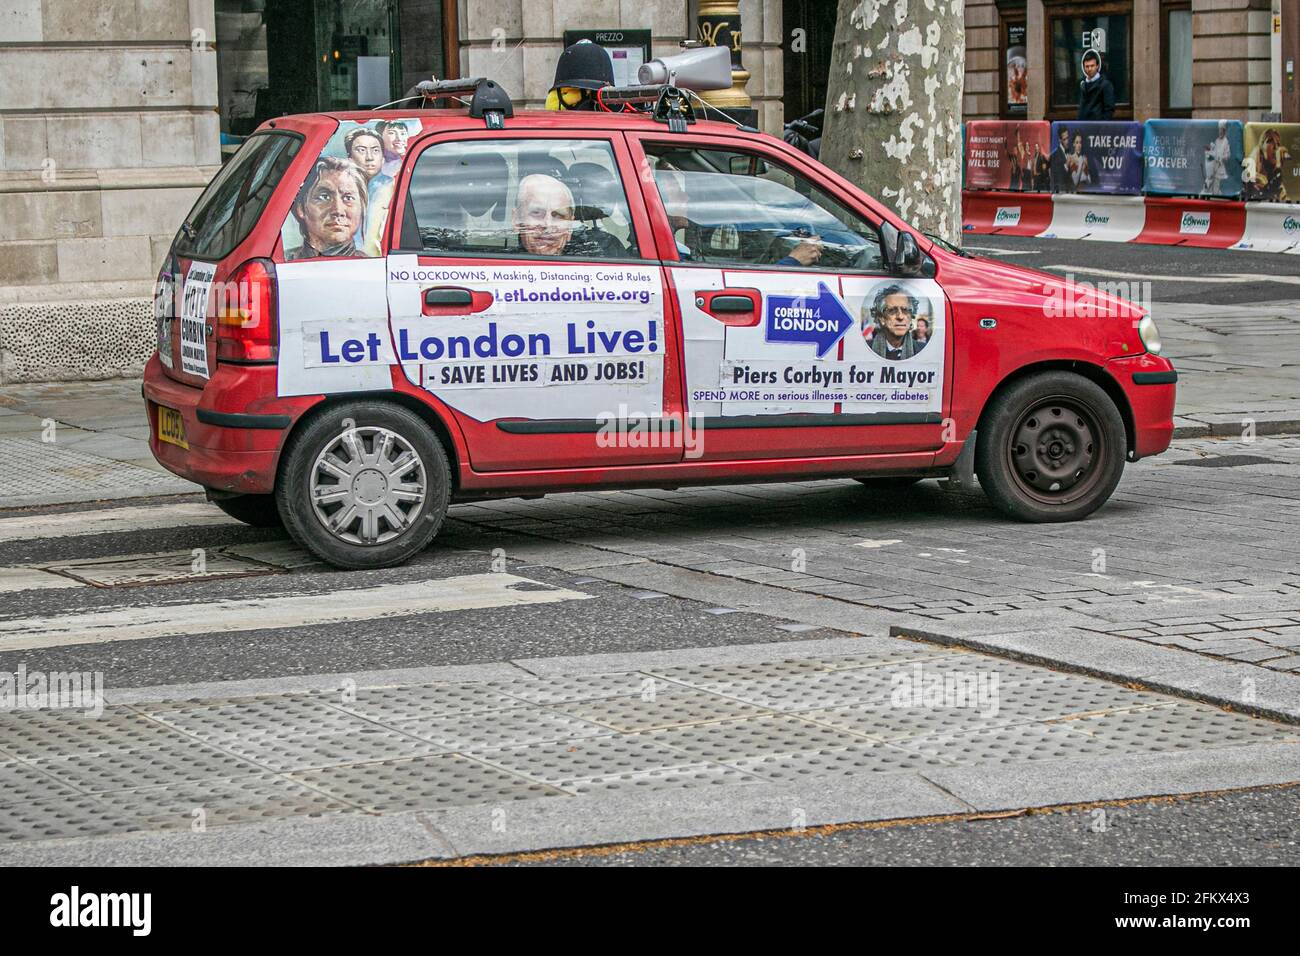 WESTMINSTER LONDRES 4 mai 2021. Une voiture de campagne Suzuki qui se rend à Westminster pour le candidat à la mairie de Londres Piers Corbyn est couverte d'affiches et de slogans collés « Lay London Live » et « no locklocklockloches » avec un mégaphone attaché au sommet alors que les Londoniens se préparent à voter le 6 mai pour élire un nouveau maire. Le candidat anti-verrouillage Piers Corbyn fait campagne pour mettre fin aux ‘règles de lutte contre les Covids’ et inverser le traitement discriminatoire à l’encontre de ceux qui refusent de porter un masque facial. Credit amer ghazzal/Alamy Live News Banque D'Images